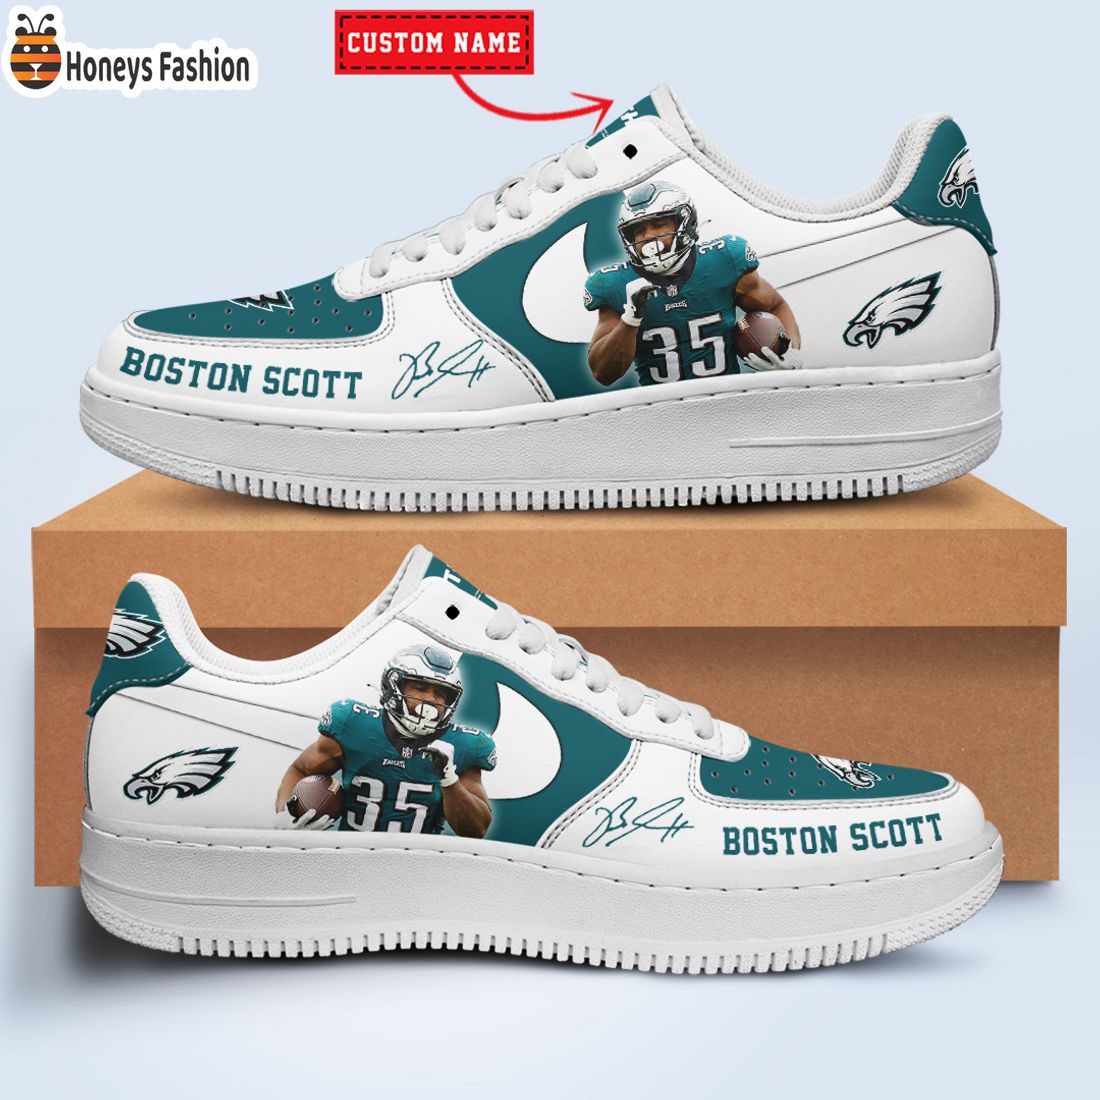 TOP SELLER Boston Scott Philadelphia Eagles NFL Custom Name Nike Air Force Shoes